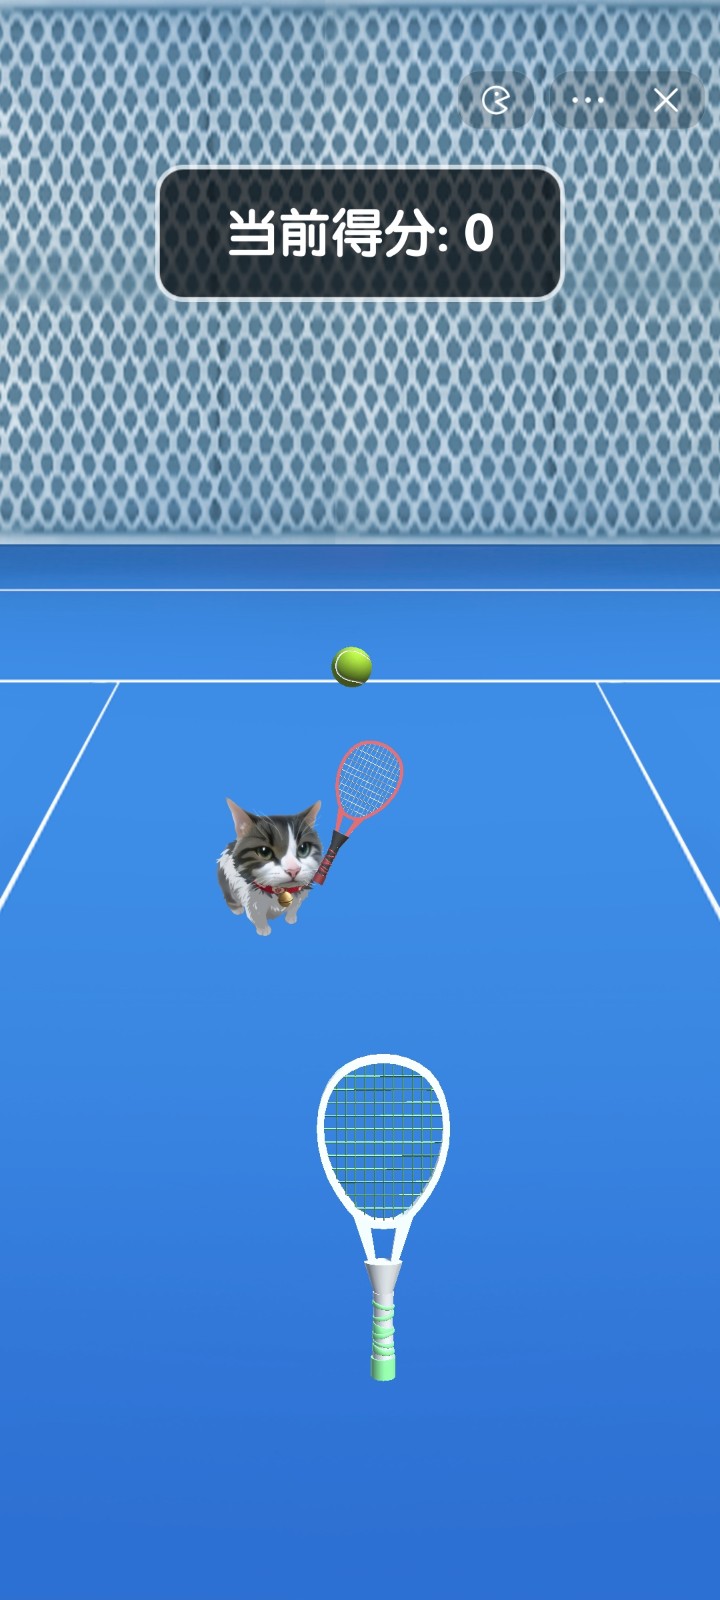 猫咪网球大赛(Cat Tennis Master)